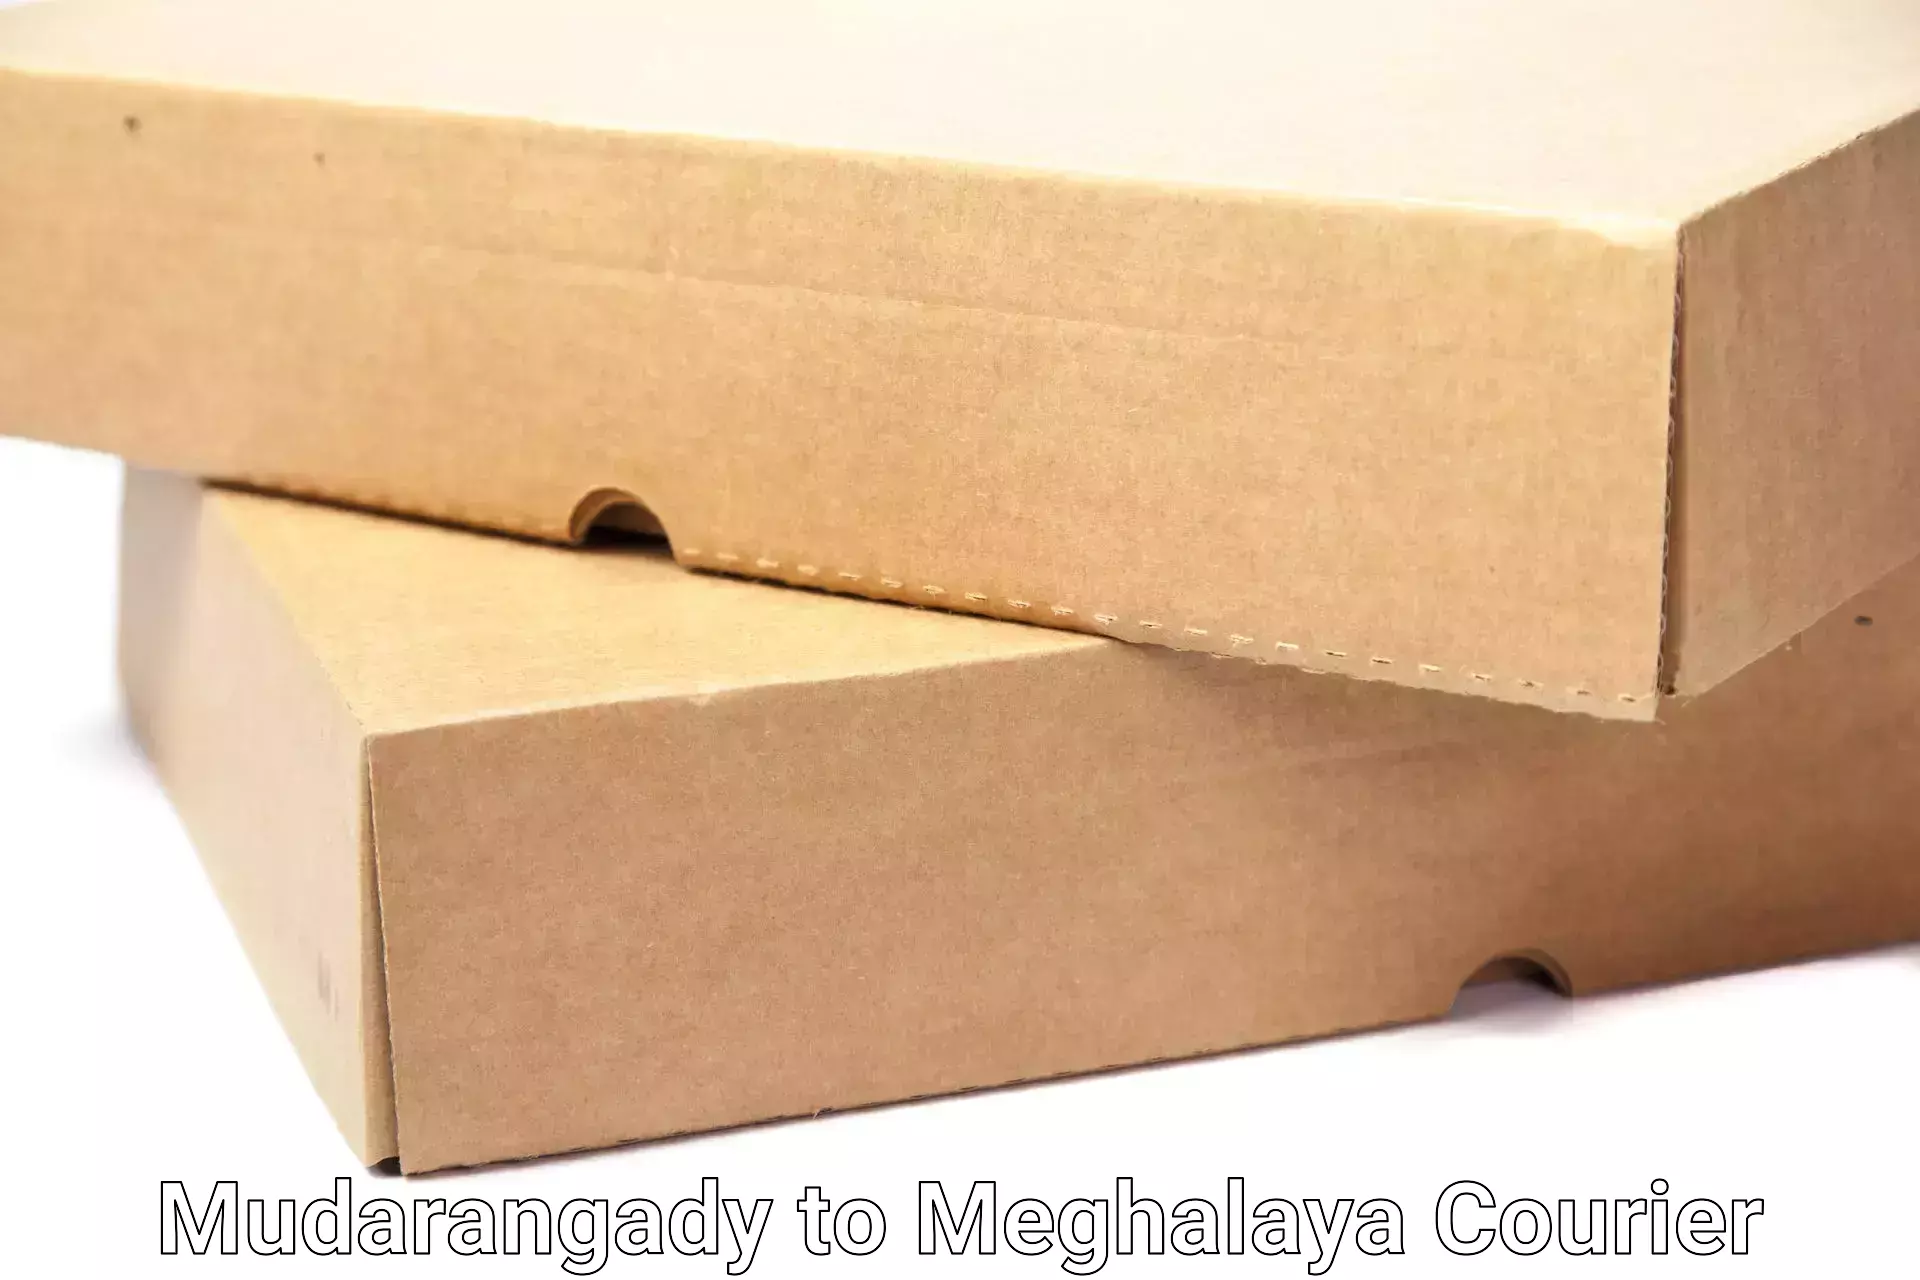 Professional moving company Mudarangady to NIT Meghalaya